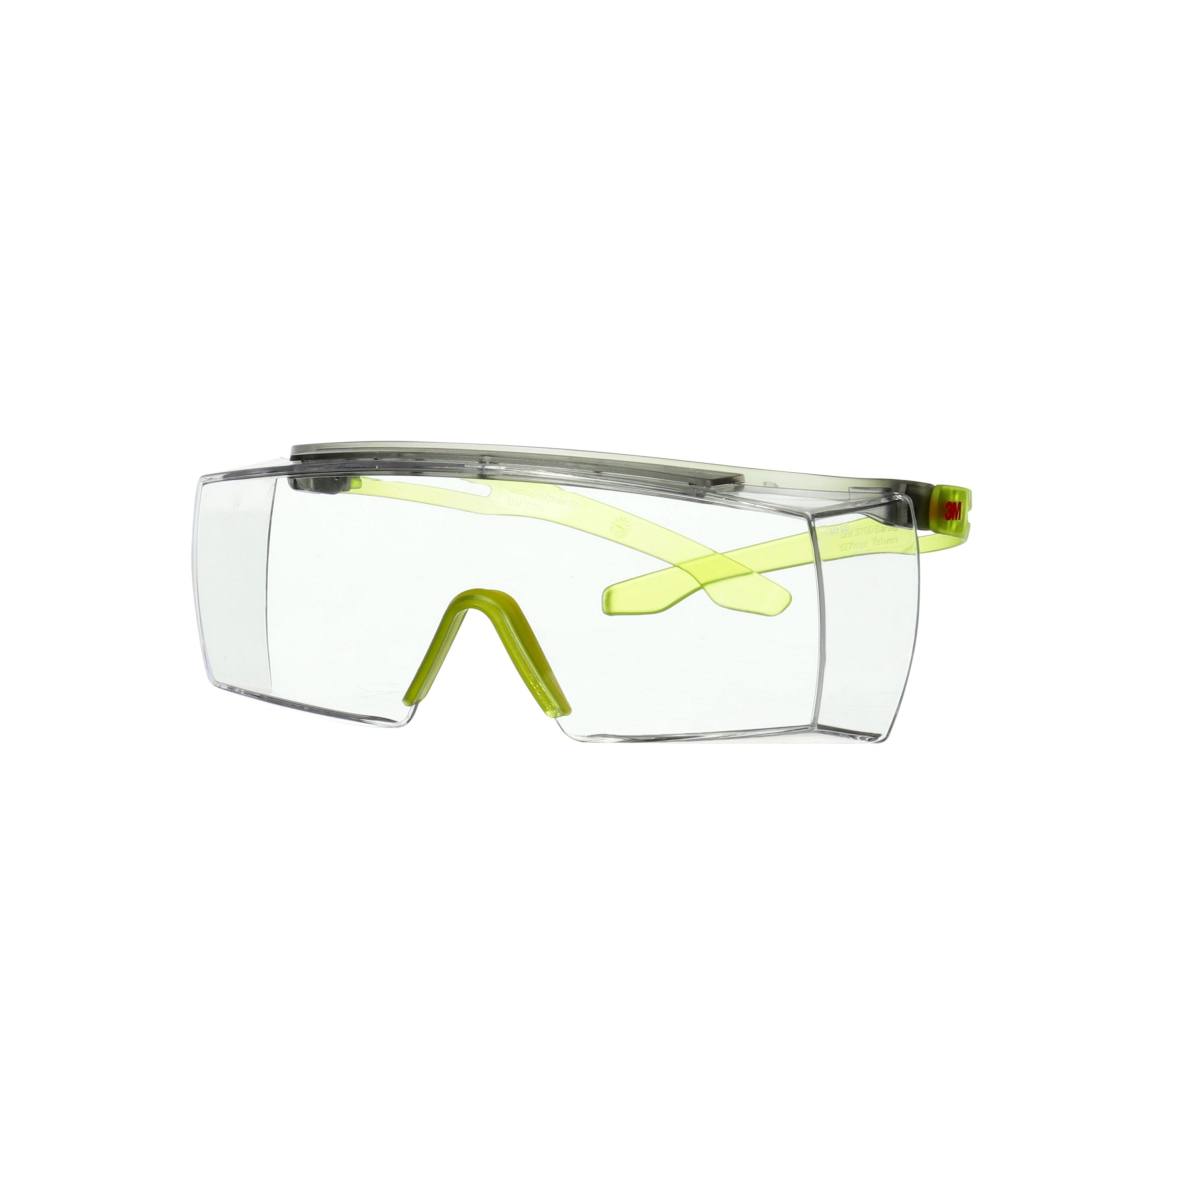 3M SecureFit 3700 Überbrille, lindgrüne Bügel, Scotchgard Anti-Beschlag Beschichtung (K&N), transparente Scheibe, winkelverstellbar, SF3701SGAF-GRN-EU